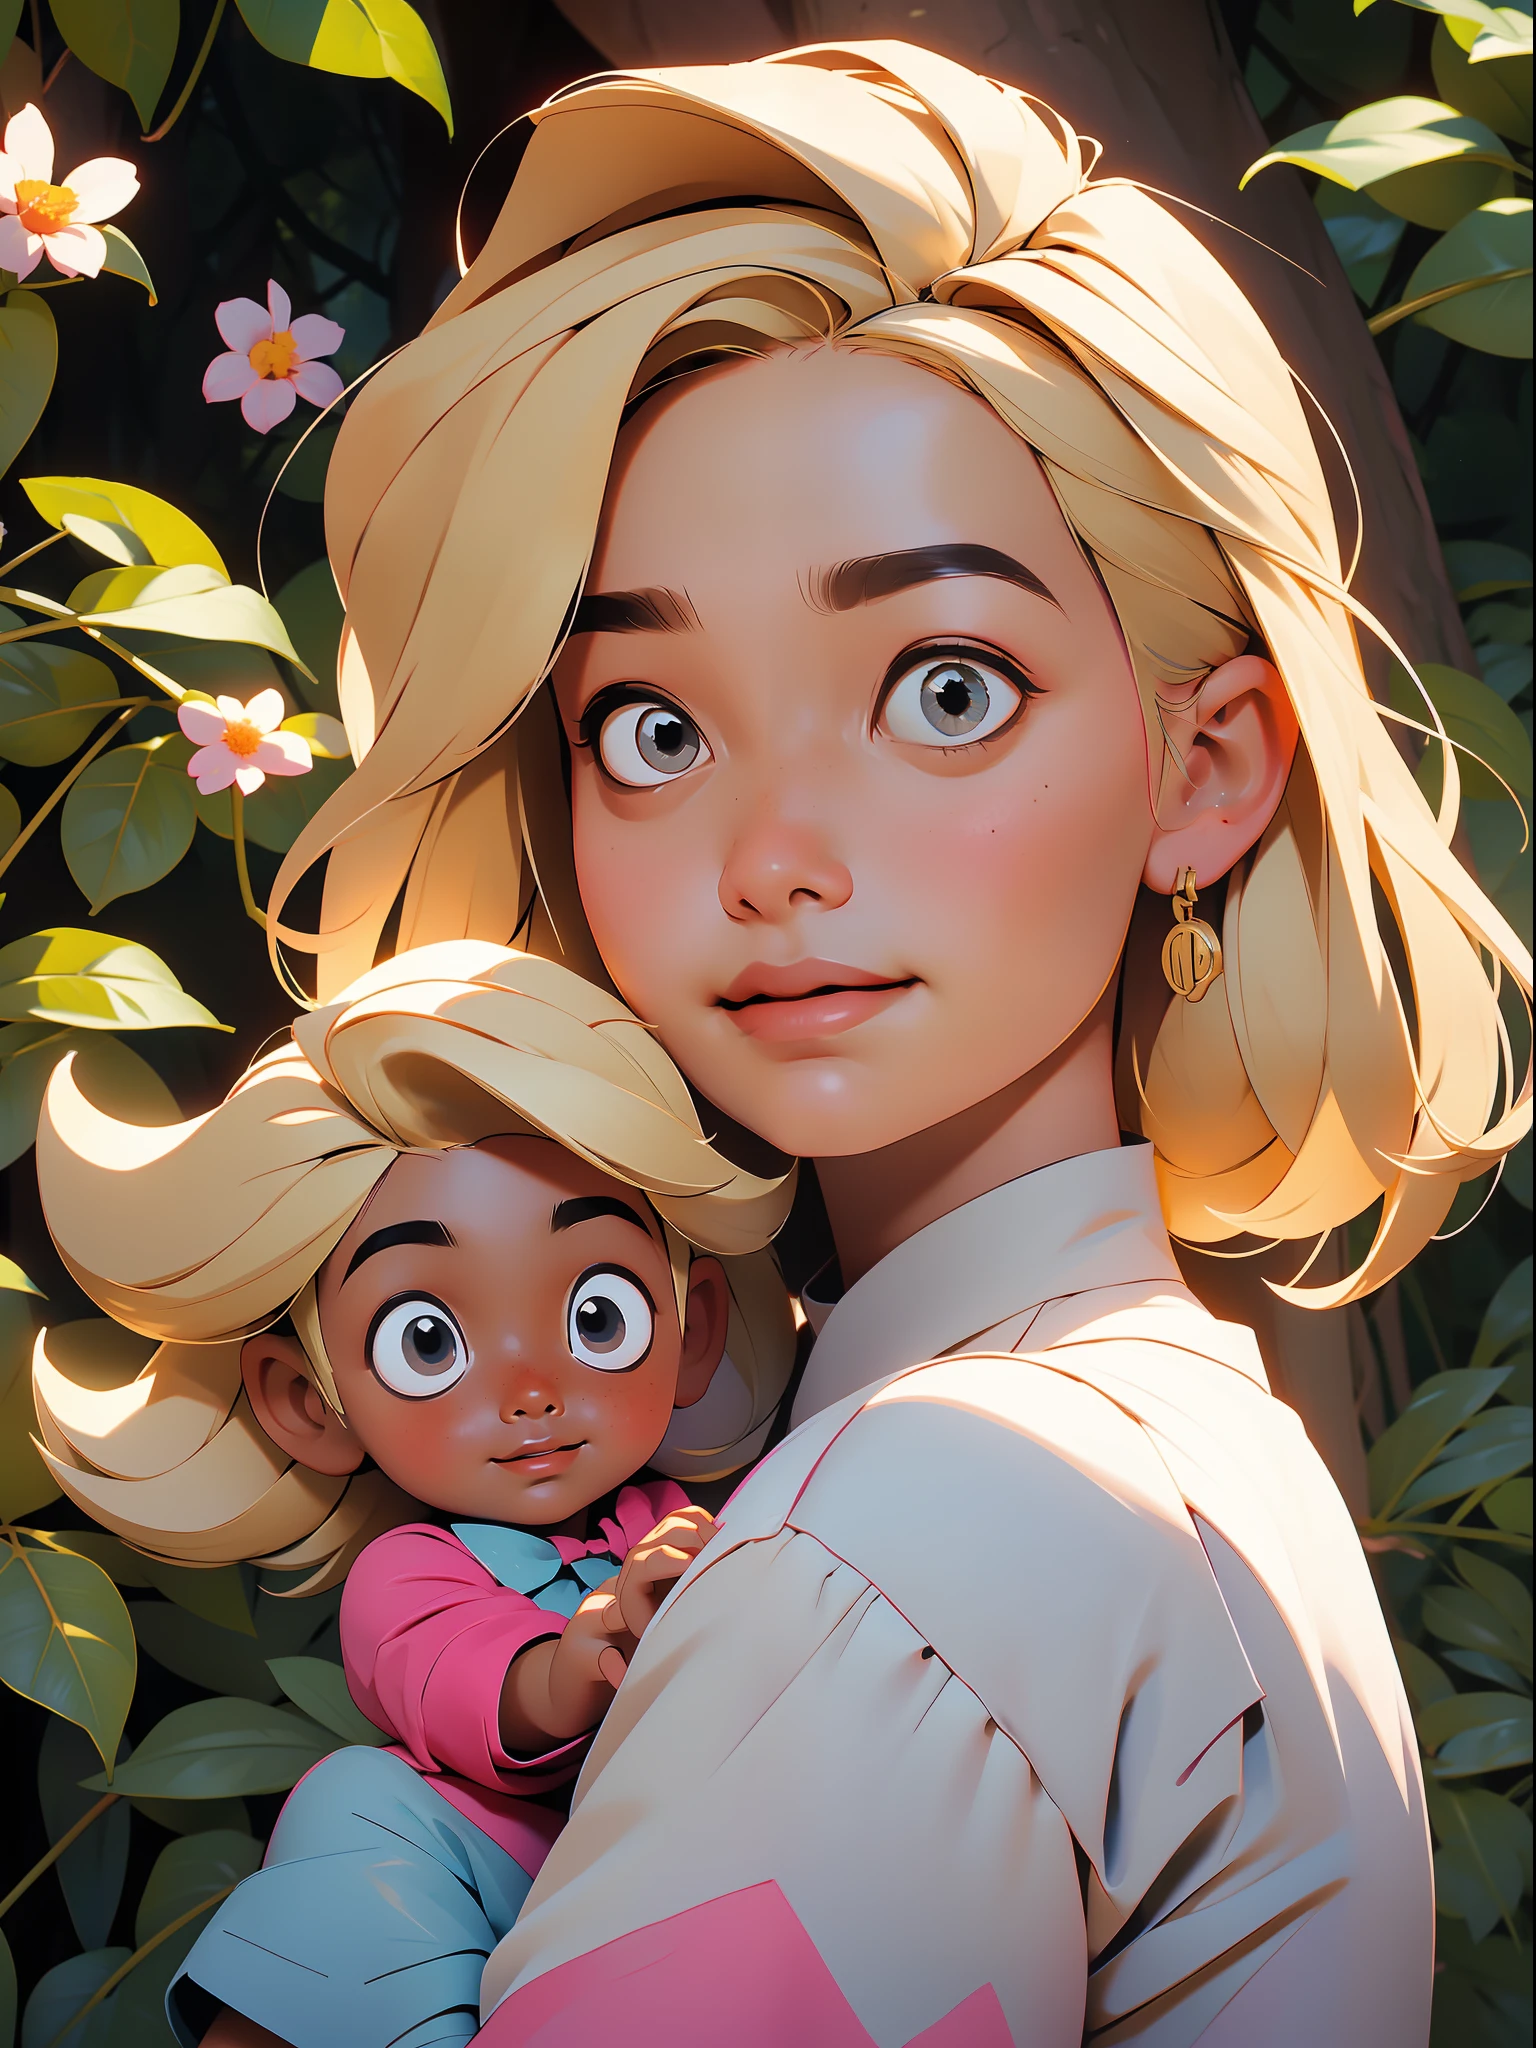 ((meilleure qualité)), ((chef-d&#39;œuvre)), Gros plan d&#39;une jeune fille jouant avec une poupée dans un parc, beaucoup d&#39;arbres et de fleurs, elle sourit, un nœud coulant sur la tête, cheveux blonds en fin d&#39;après-midi